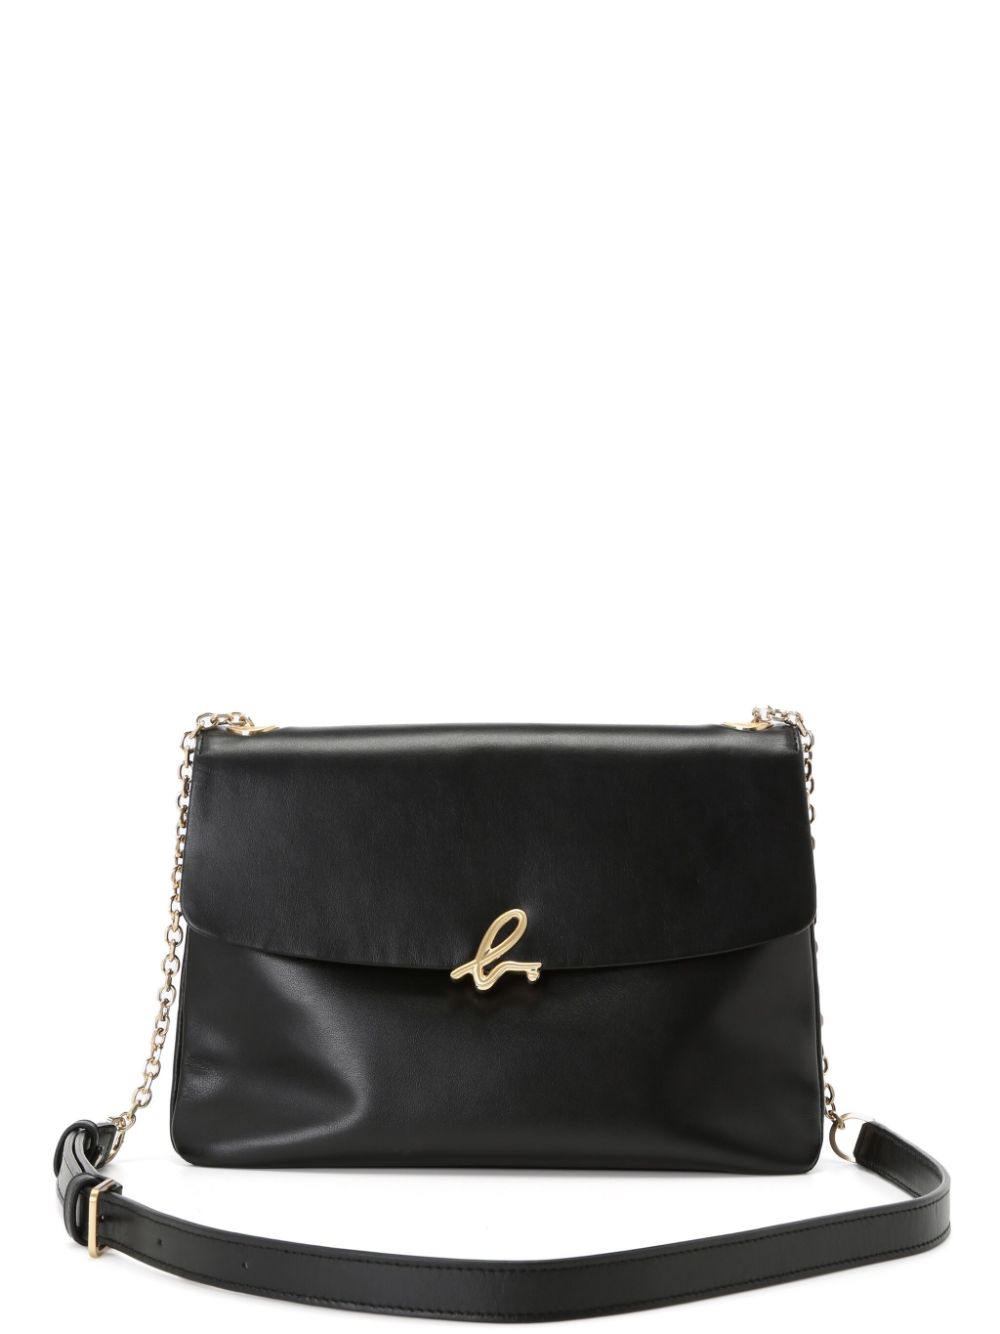 Agnès b. logo-clasp Leather Crossbody Bag - Farfetch